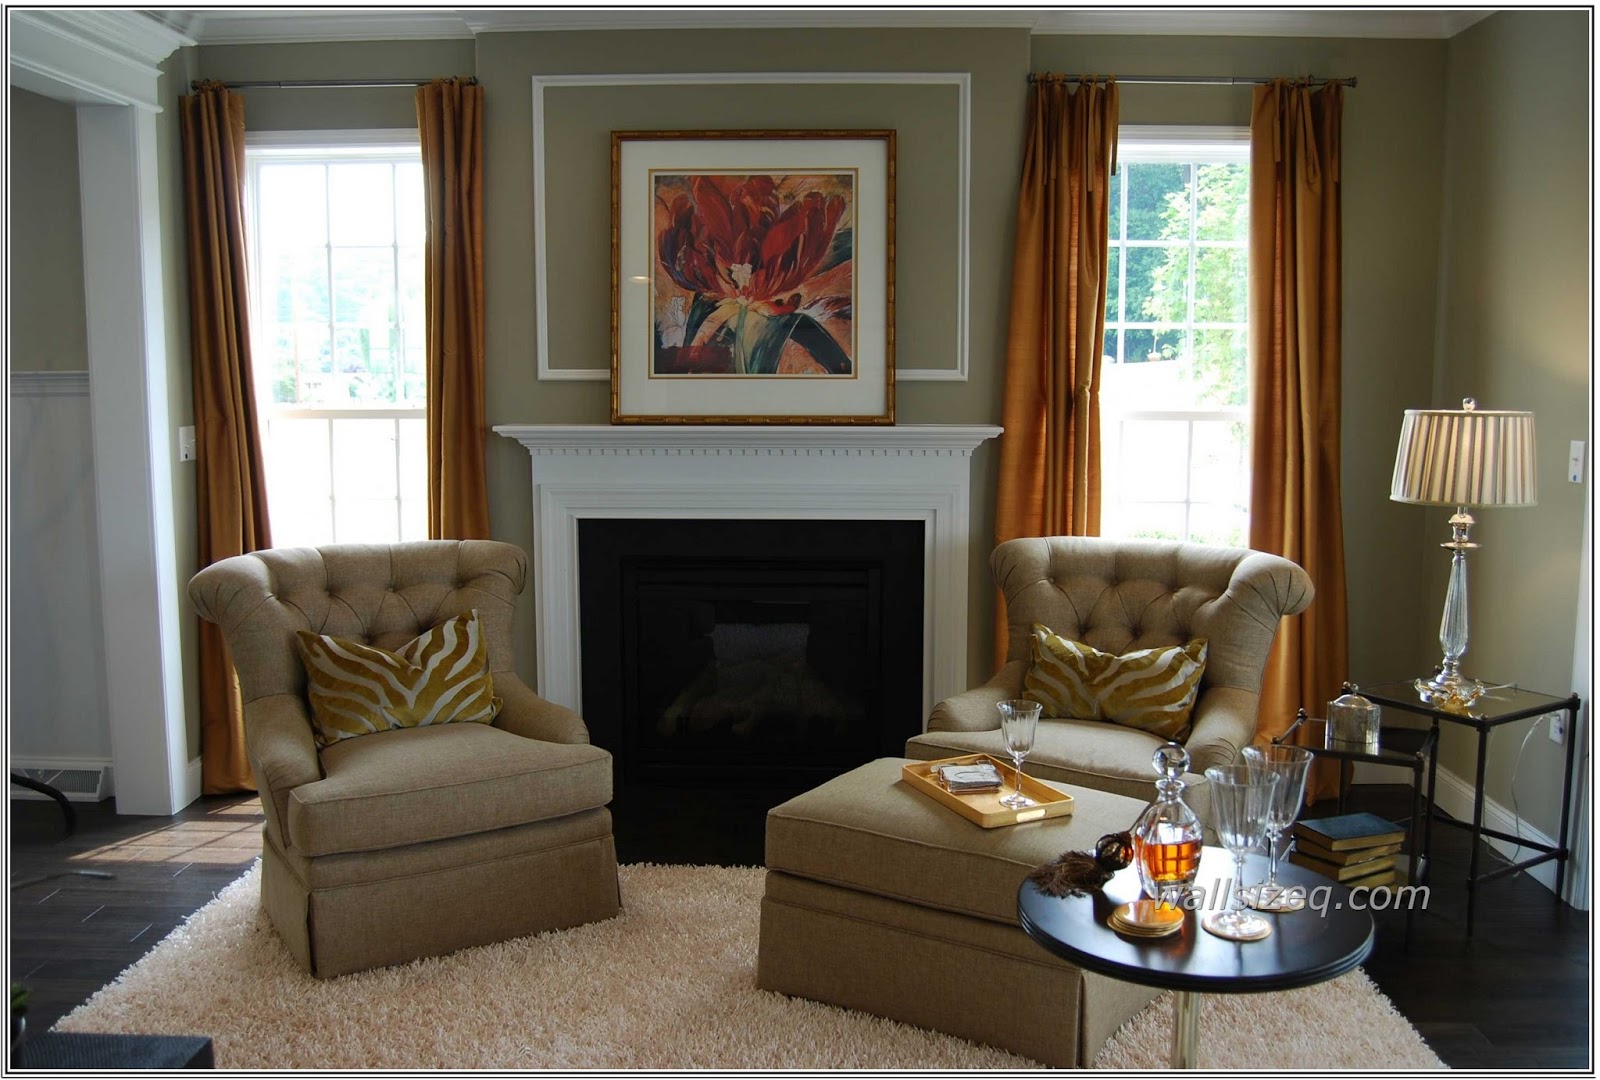 Desain Unique Sofa Living Room Kumpulan Desain Minimalis Interior